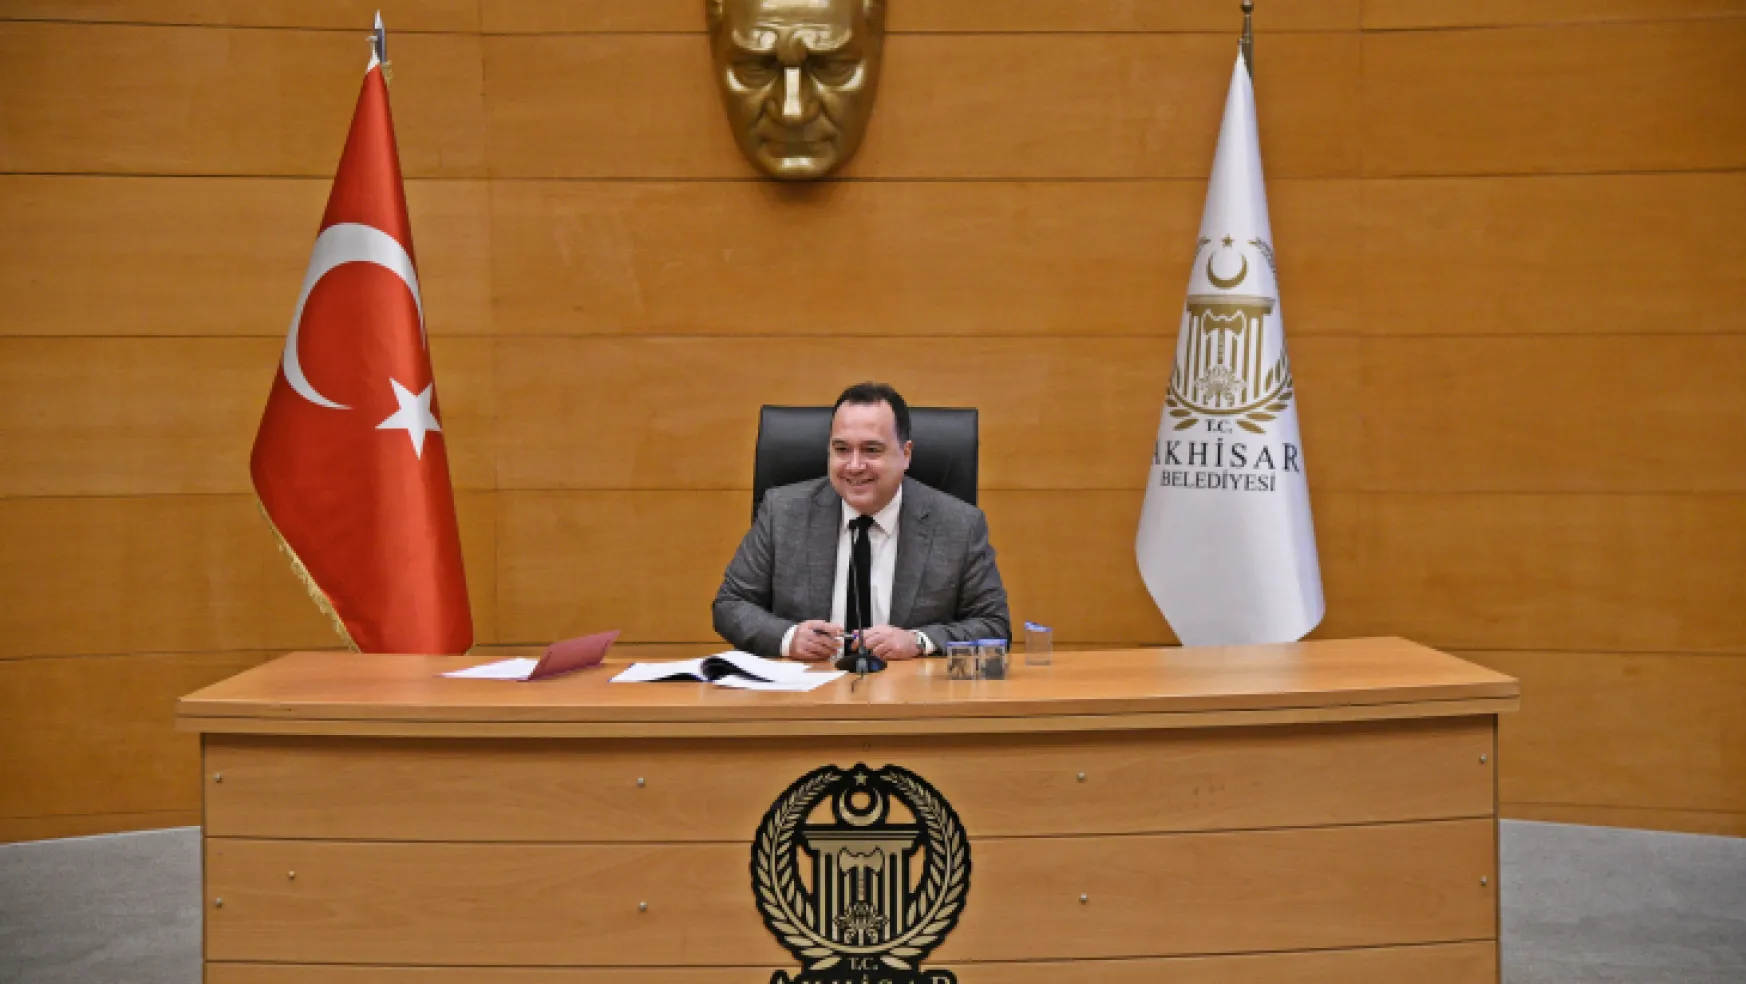 Akhisar Belediyesi Ocak ayı meclis toplantısı, Belediye Başkanı Besim Dutlulu'nun başkanlığında gerçekleştirildi